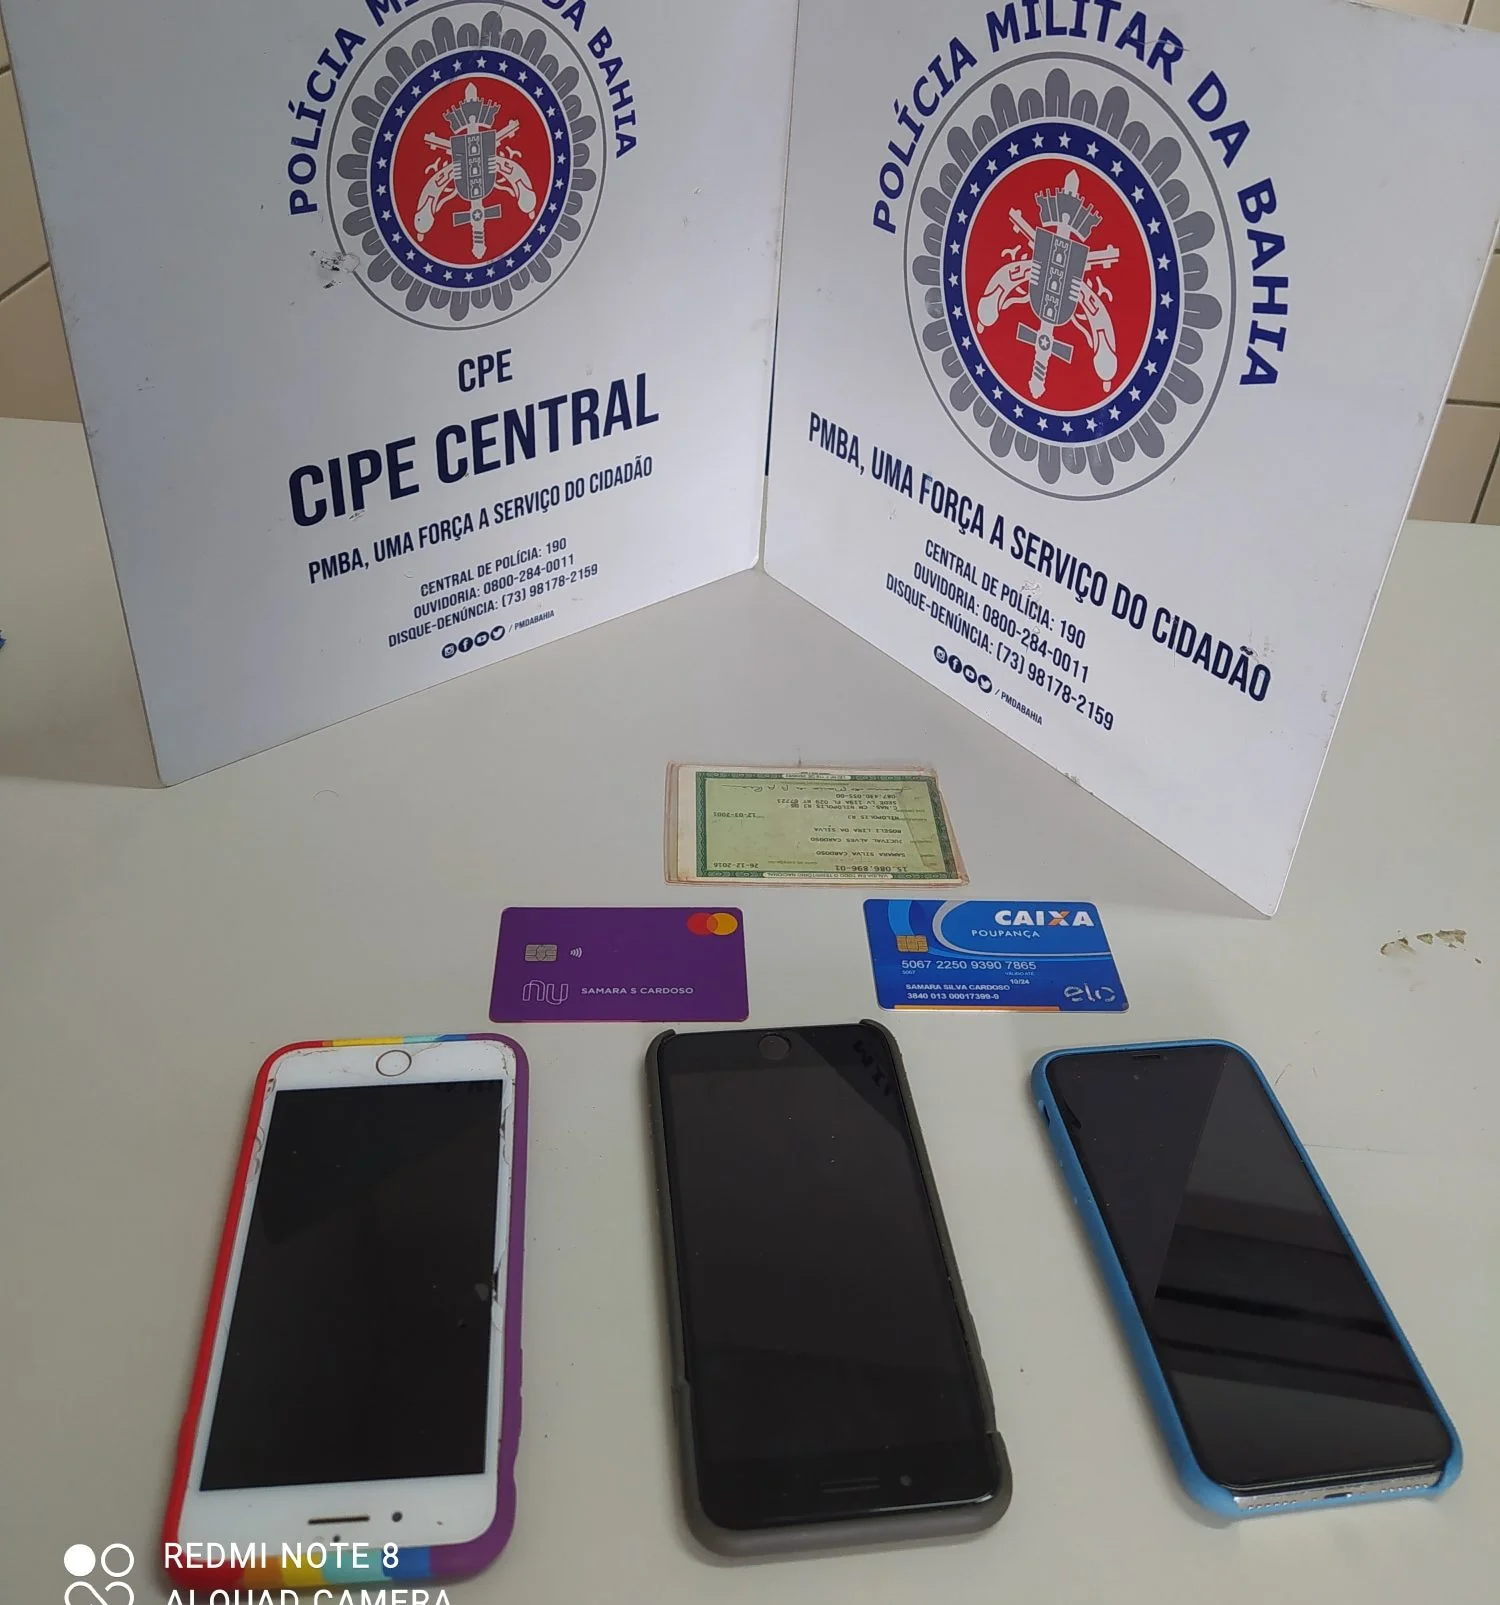 Cipe Central recupera três celulares com ajuda de GPS em Jequié